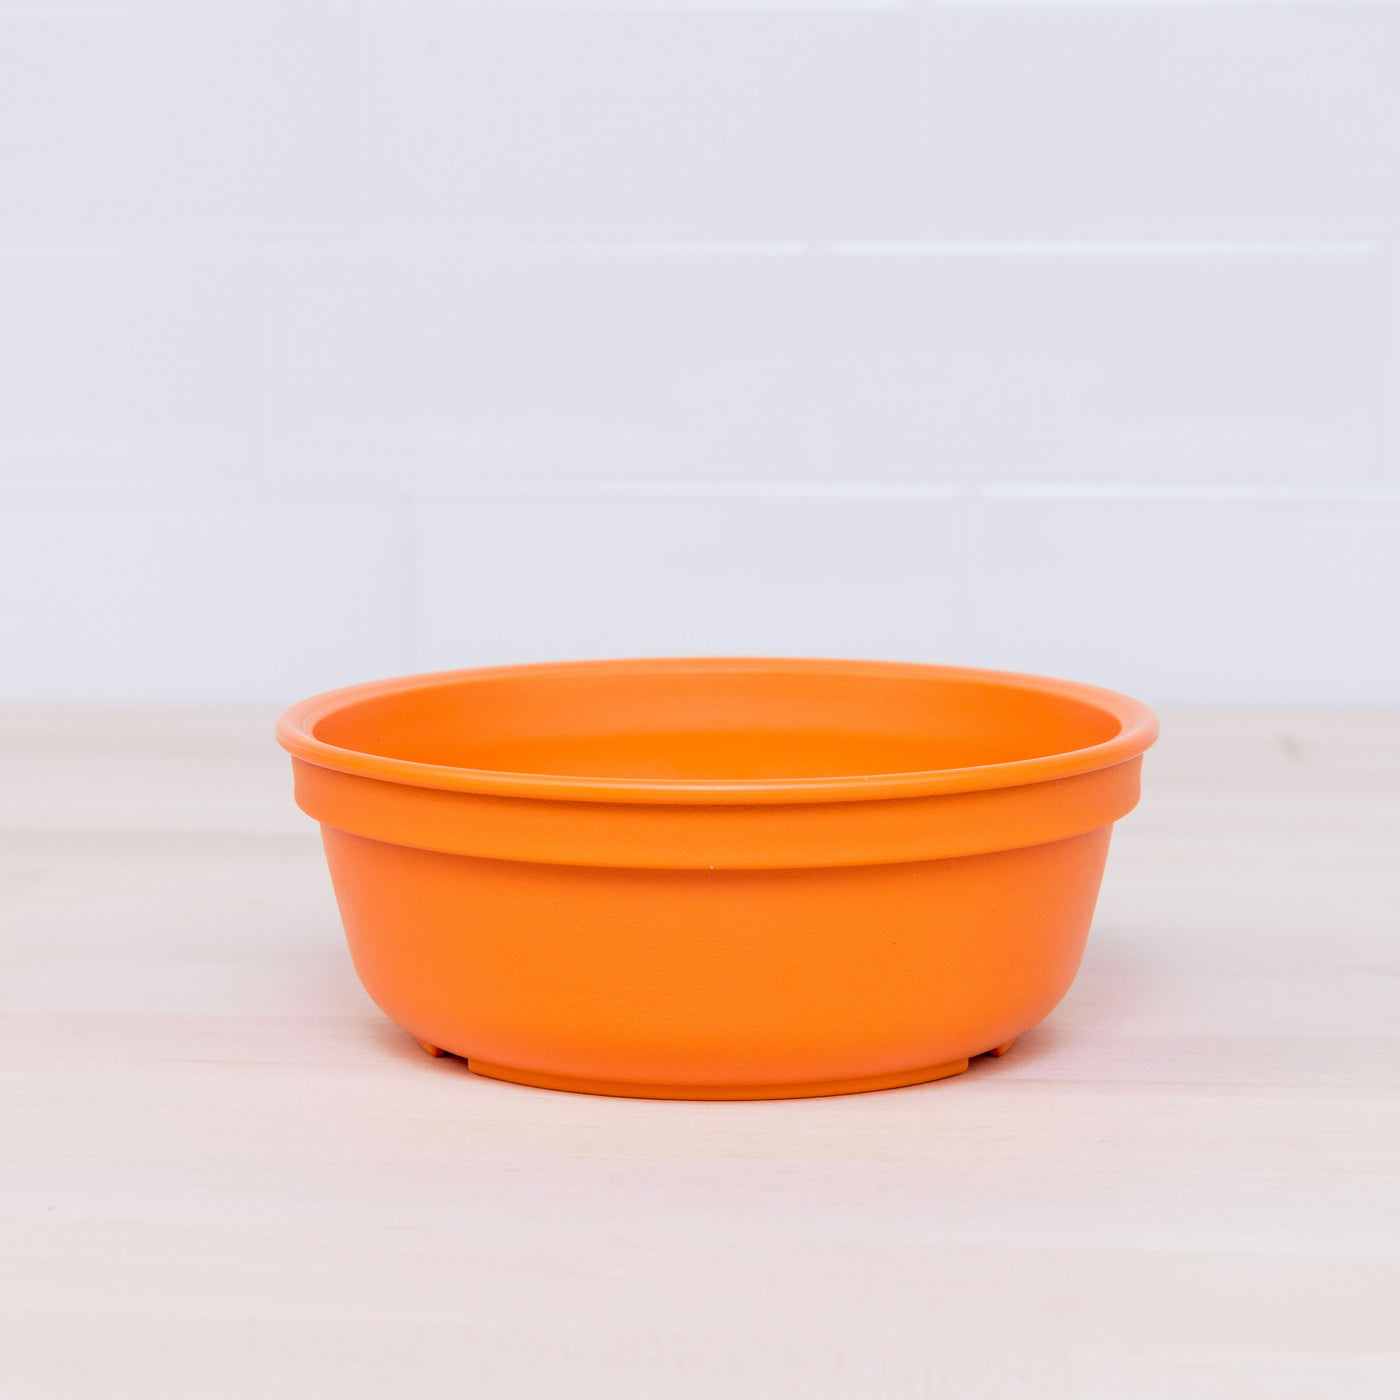 Small Bowl Feeding Re-Play Orange 